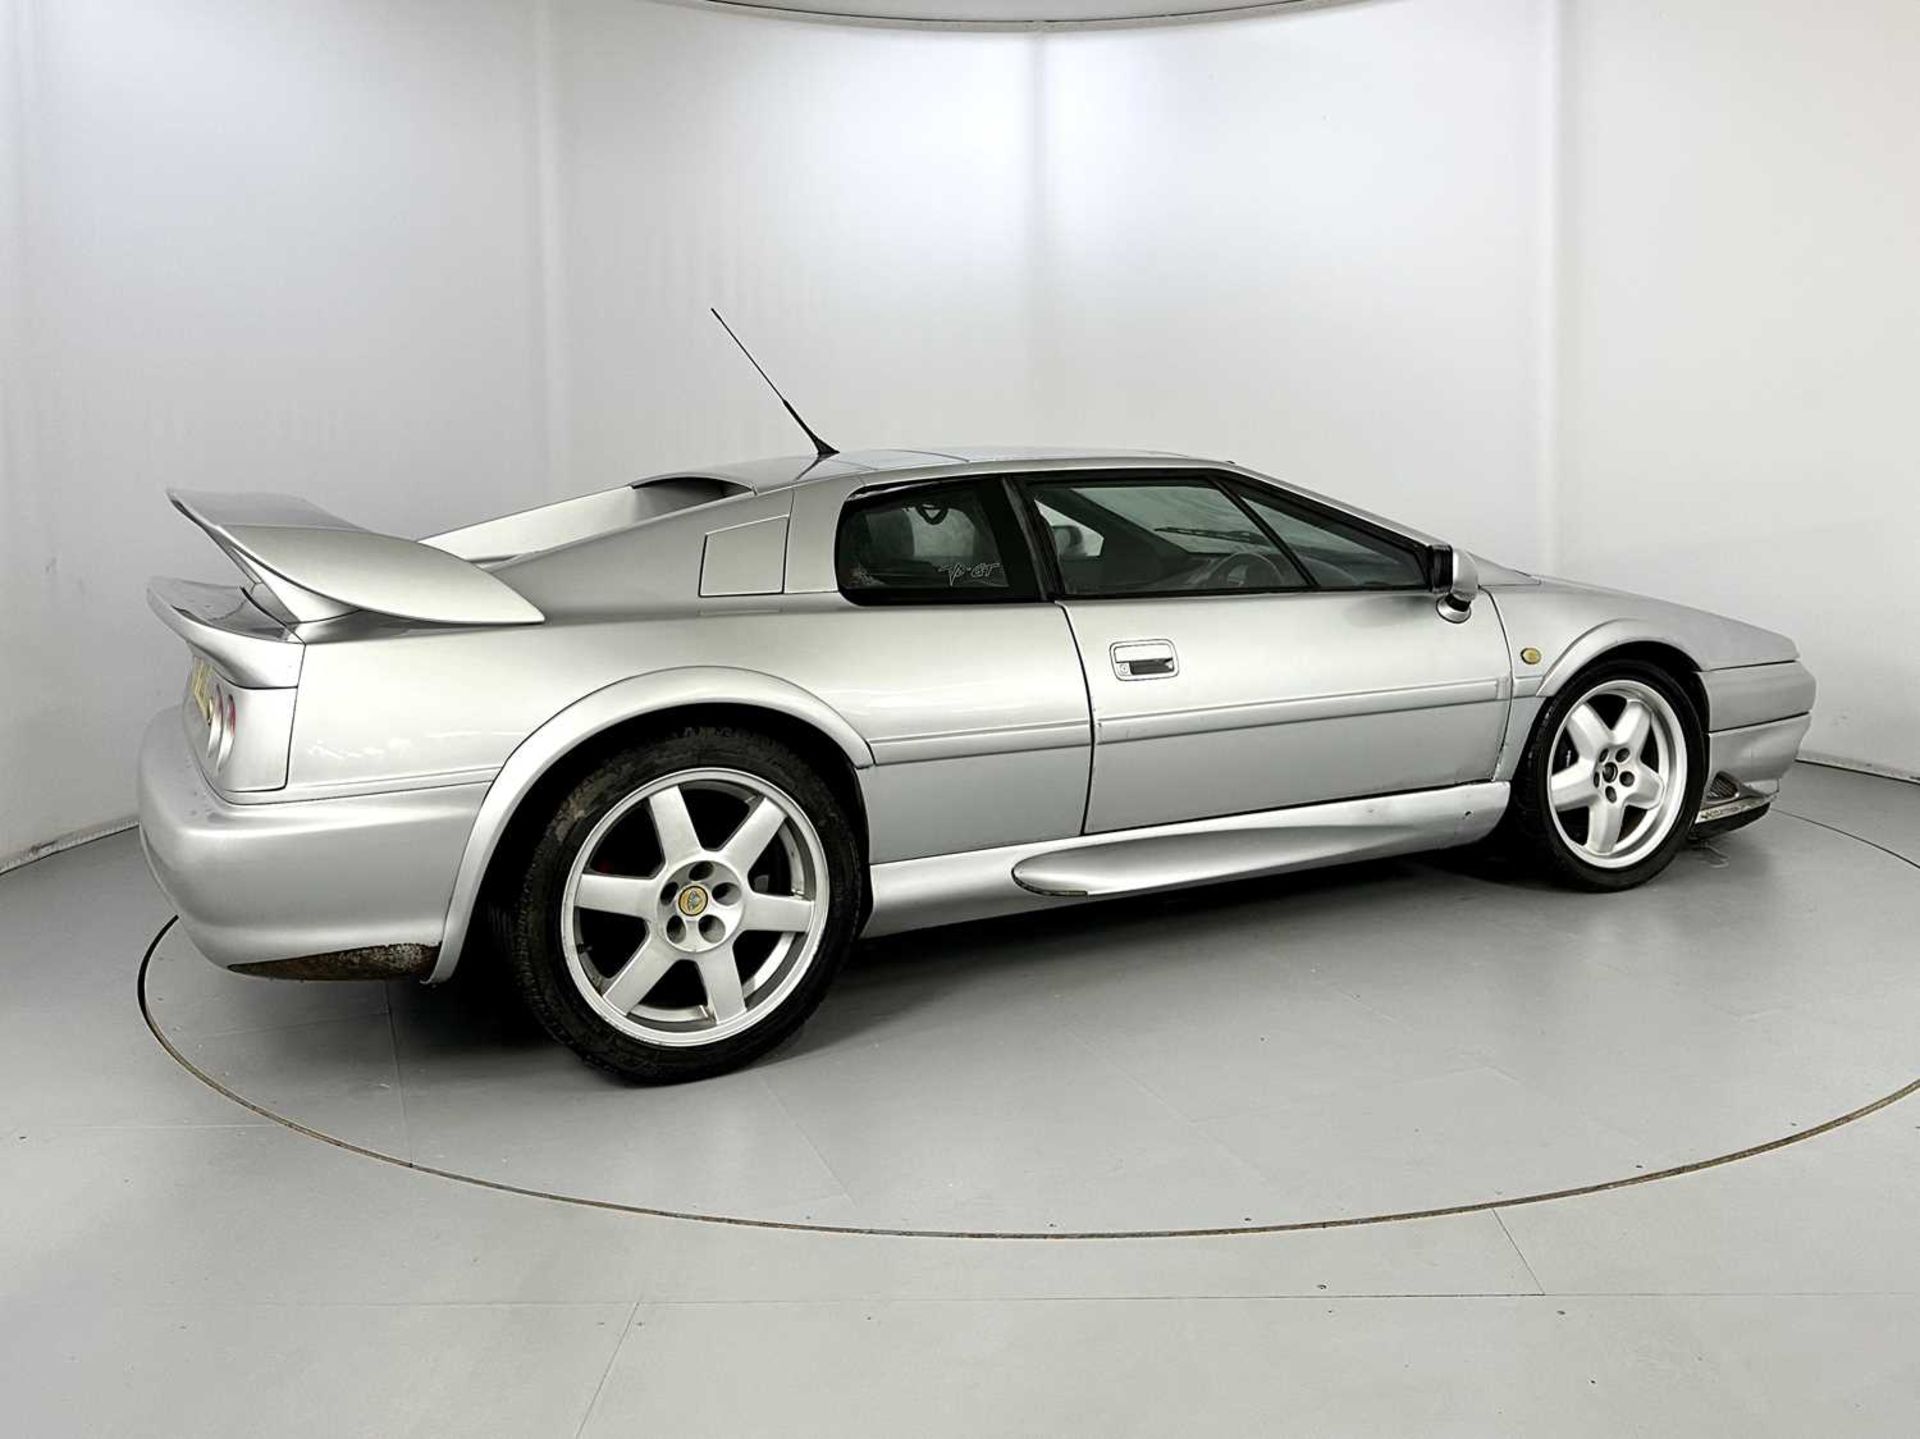 1998 Lotus Esprit V8 GT - Image 10 of 25